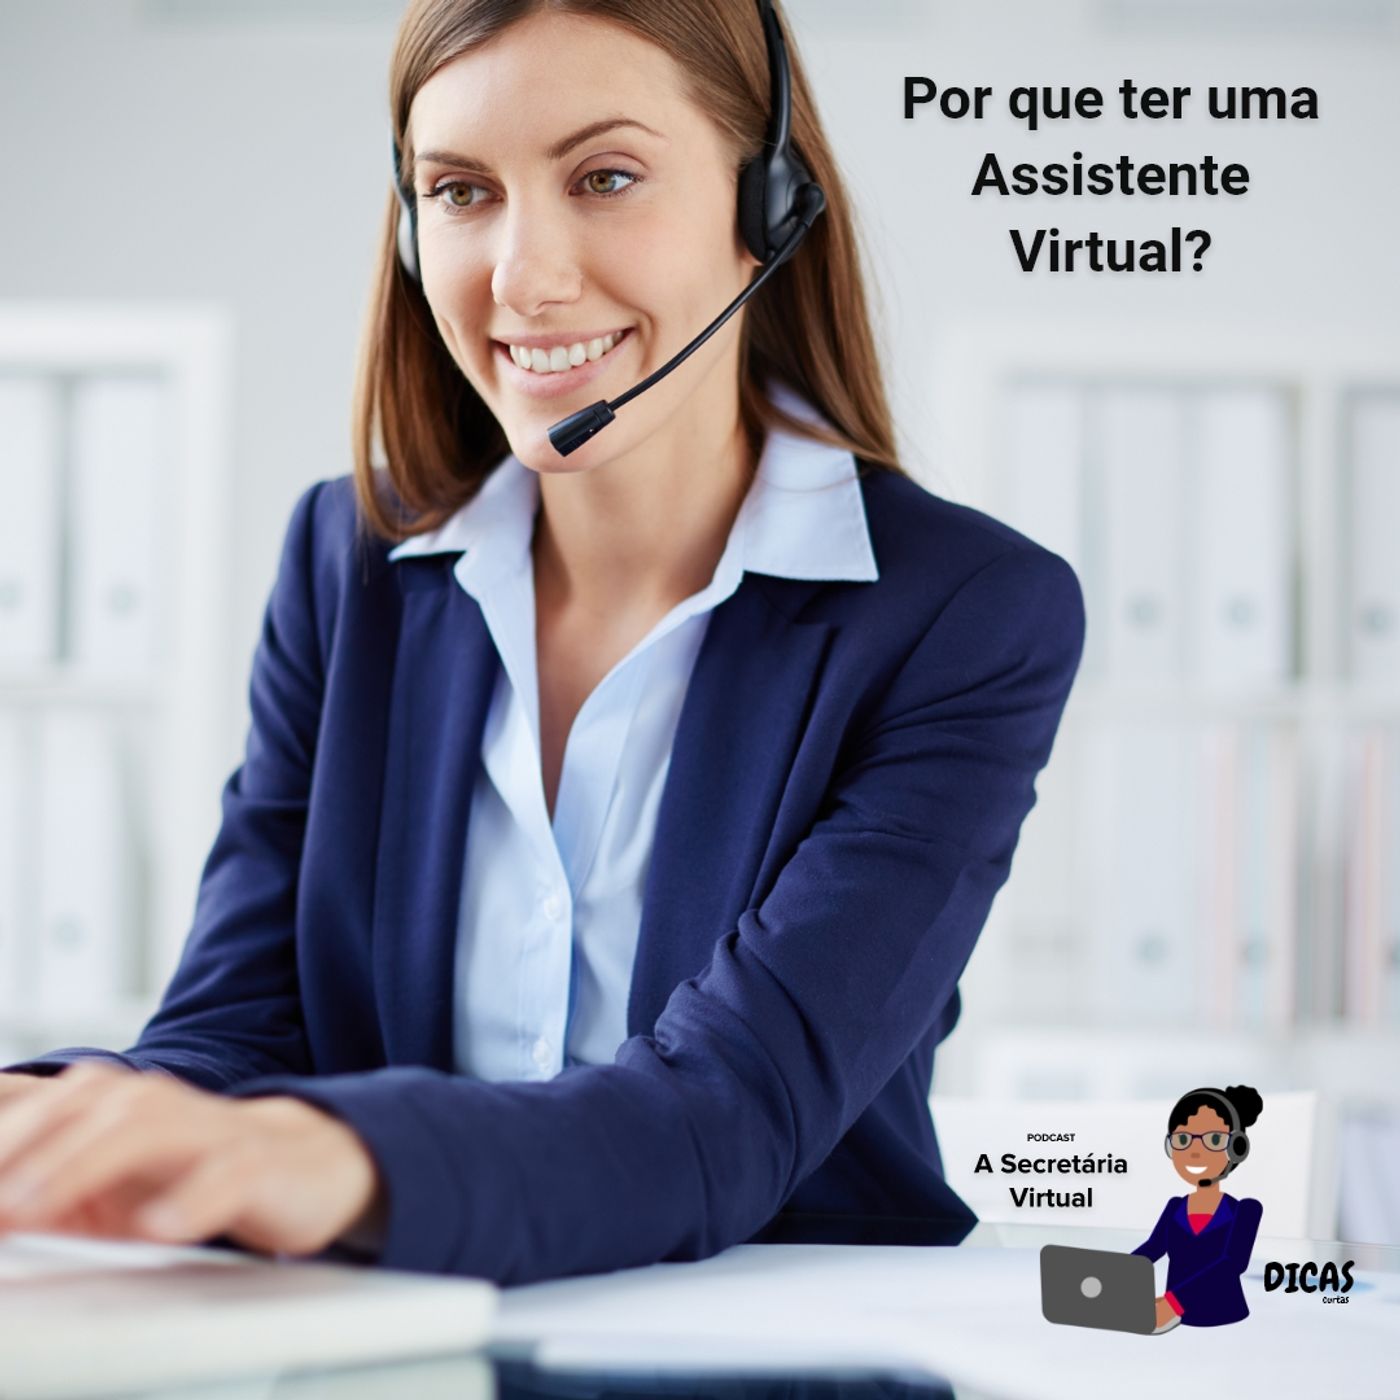 001 Por que ter uma assistente virtual?